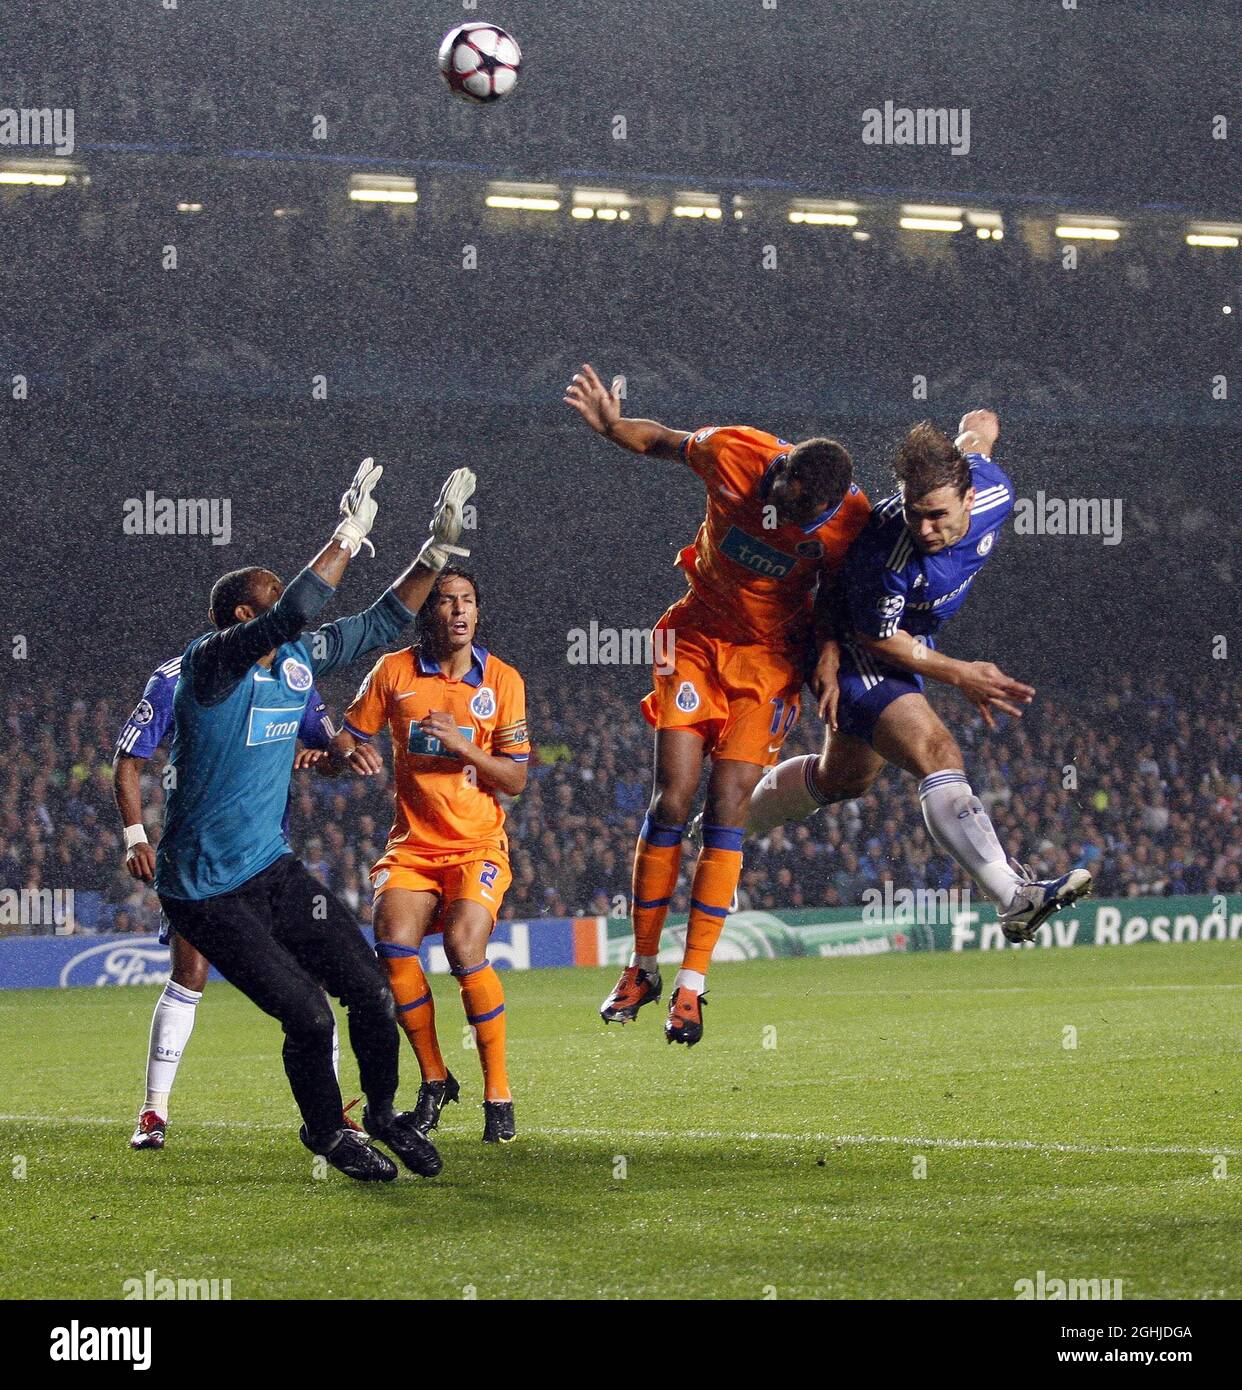 Branislav Ivanovic, del Chelsea, se dispara en un primer momento durante el partido D del grupo de la UEFA Champions League entre Chelsea contra FC Porto en Stamford Bridge. Foto de stock